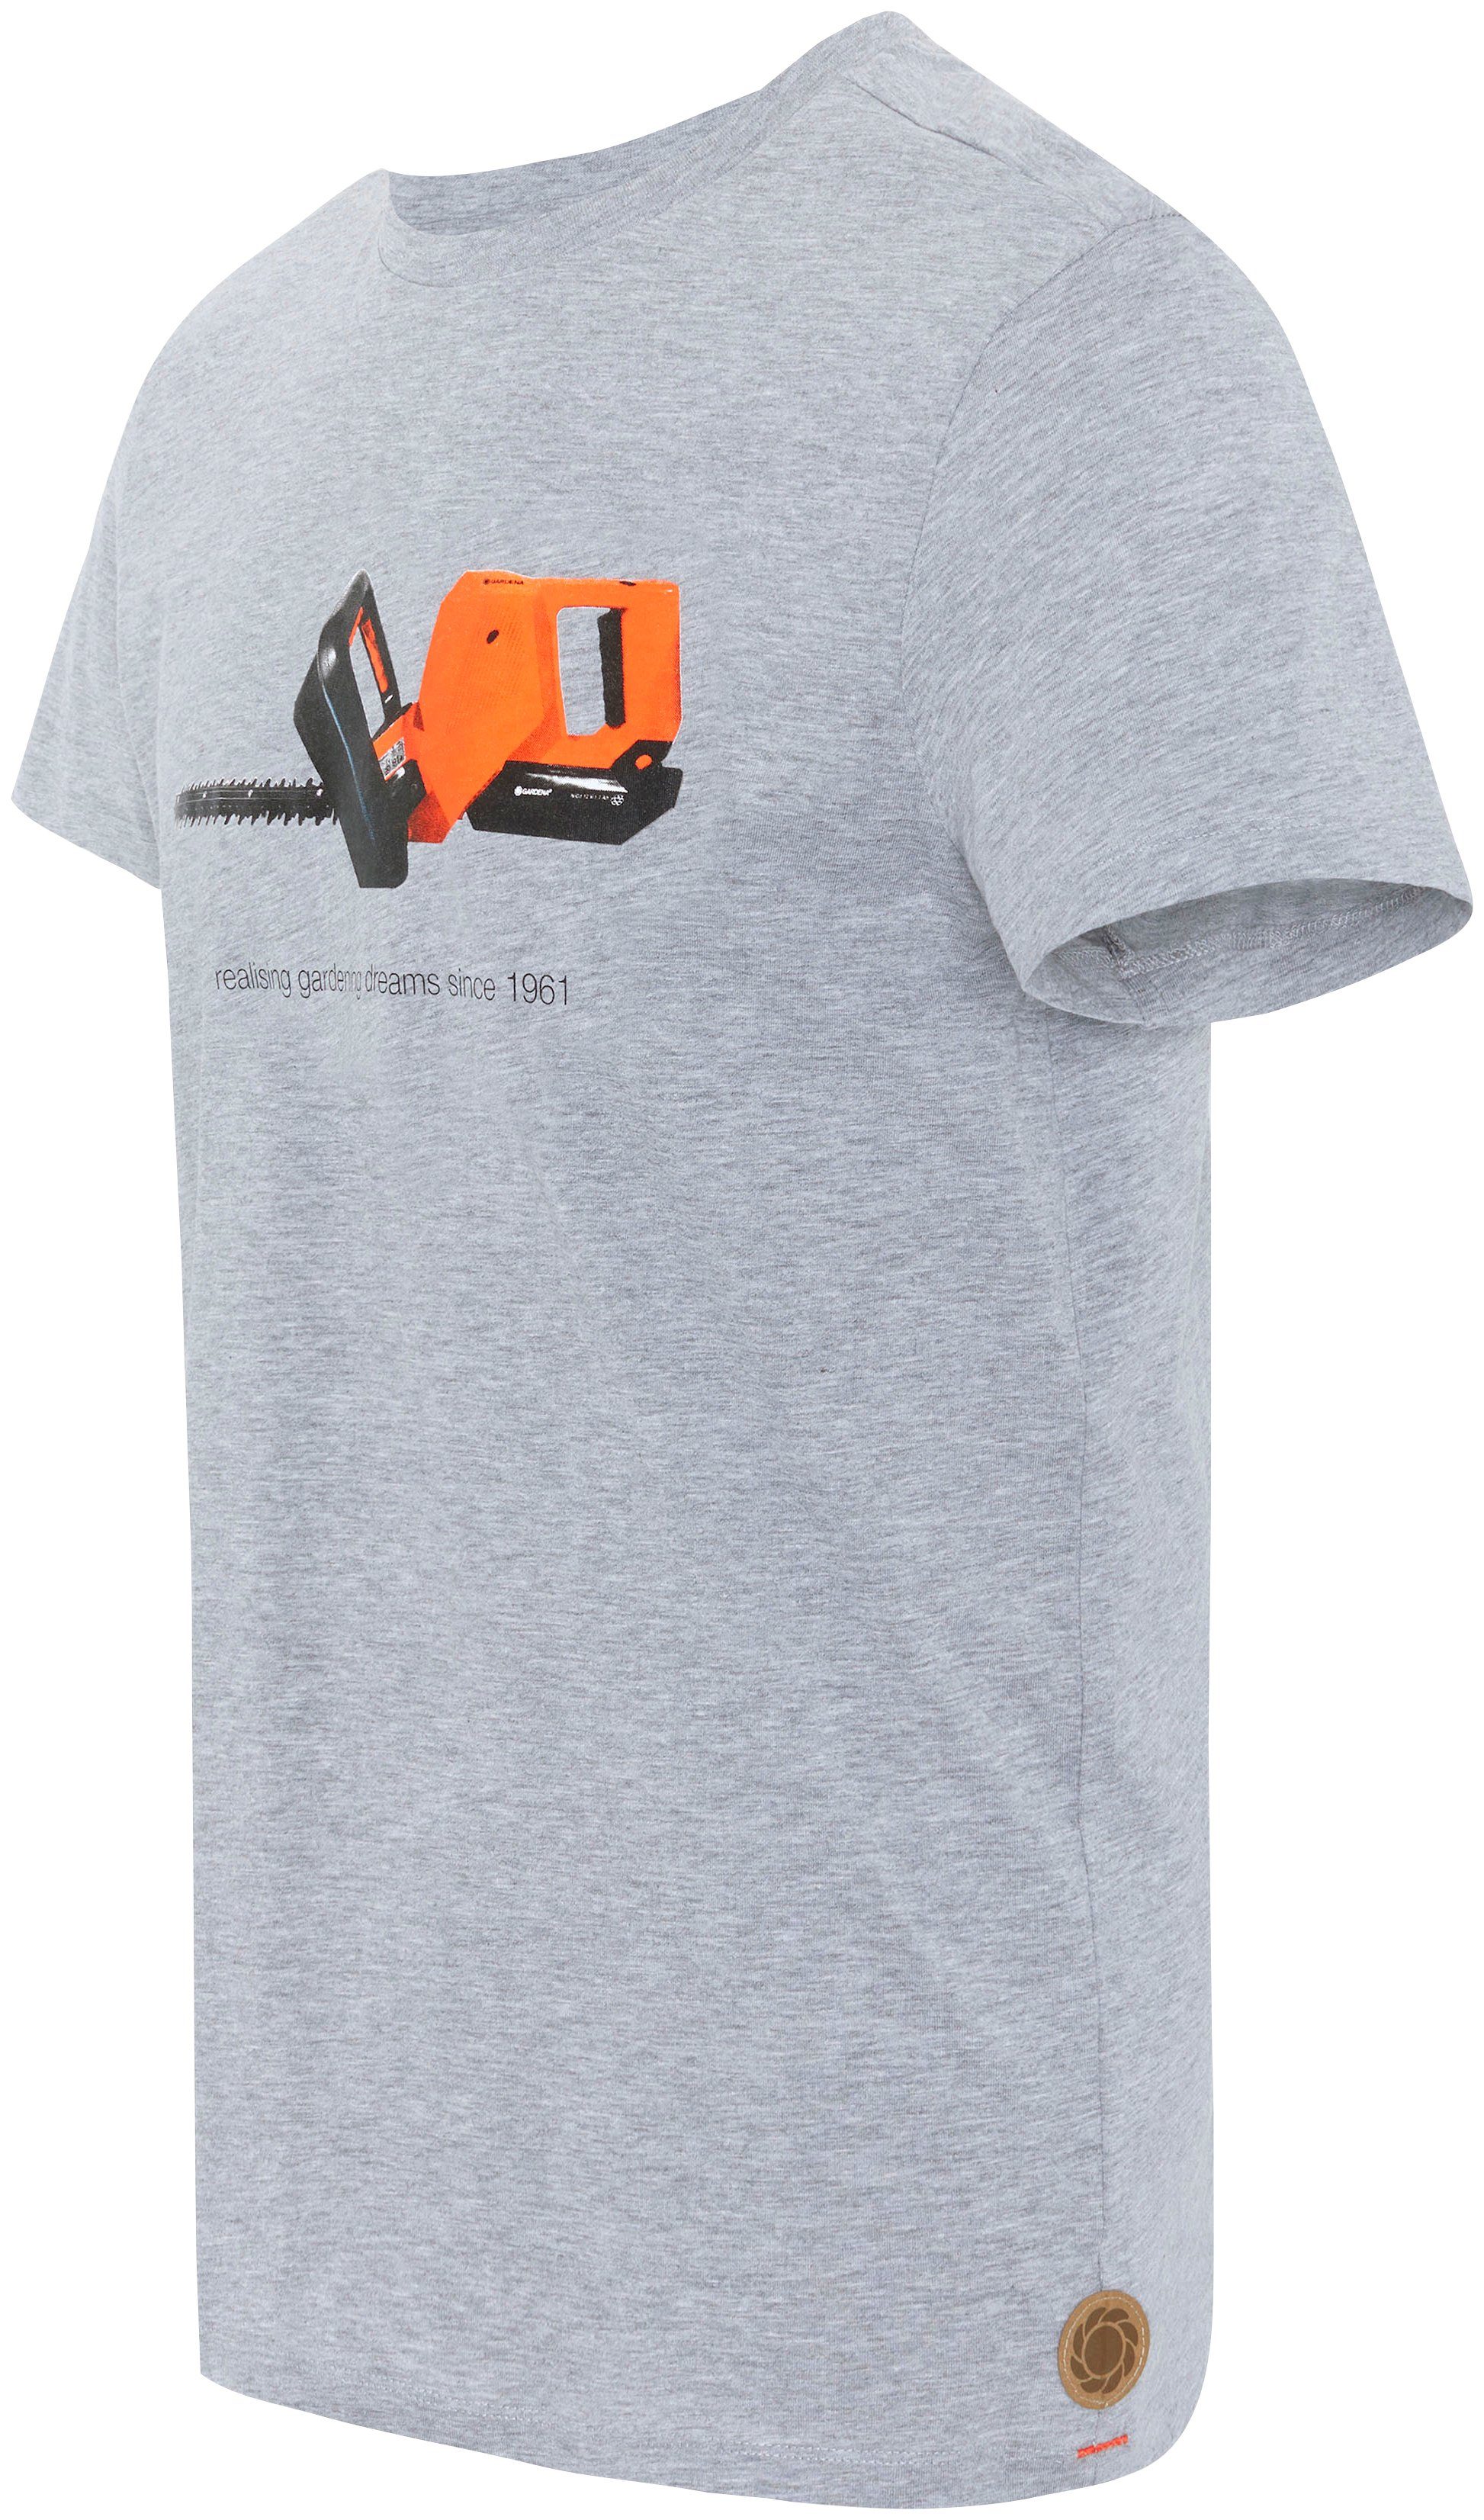 GARDENA T-Shirt Light Grey Aufdruck Melange mit